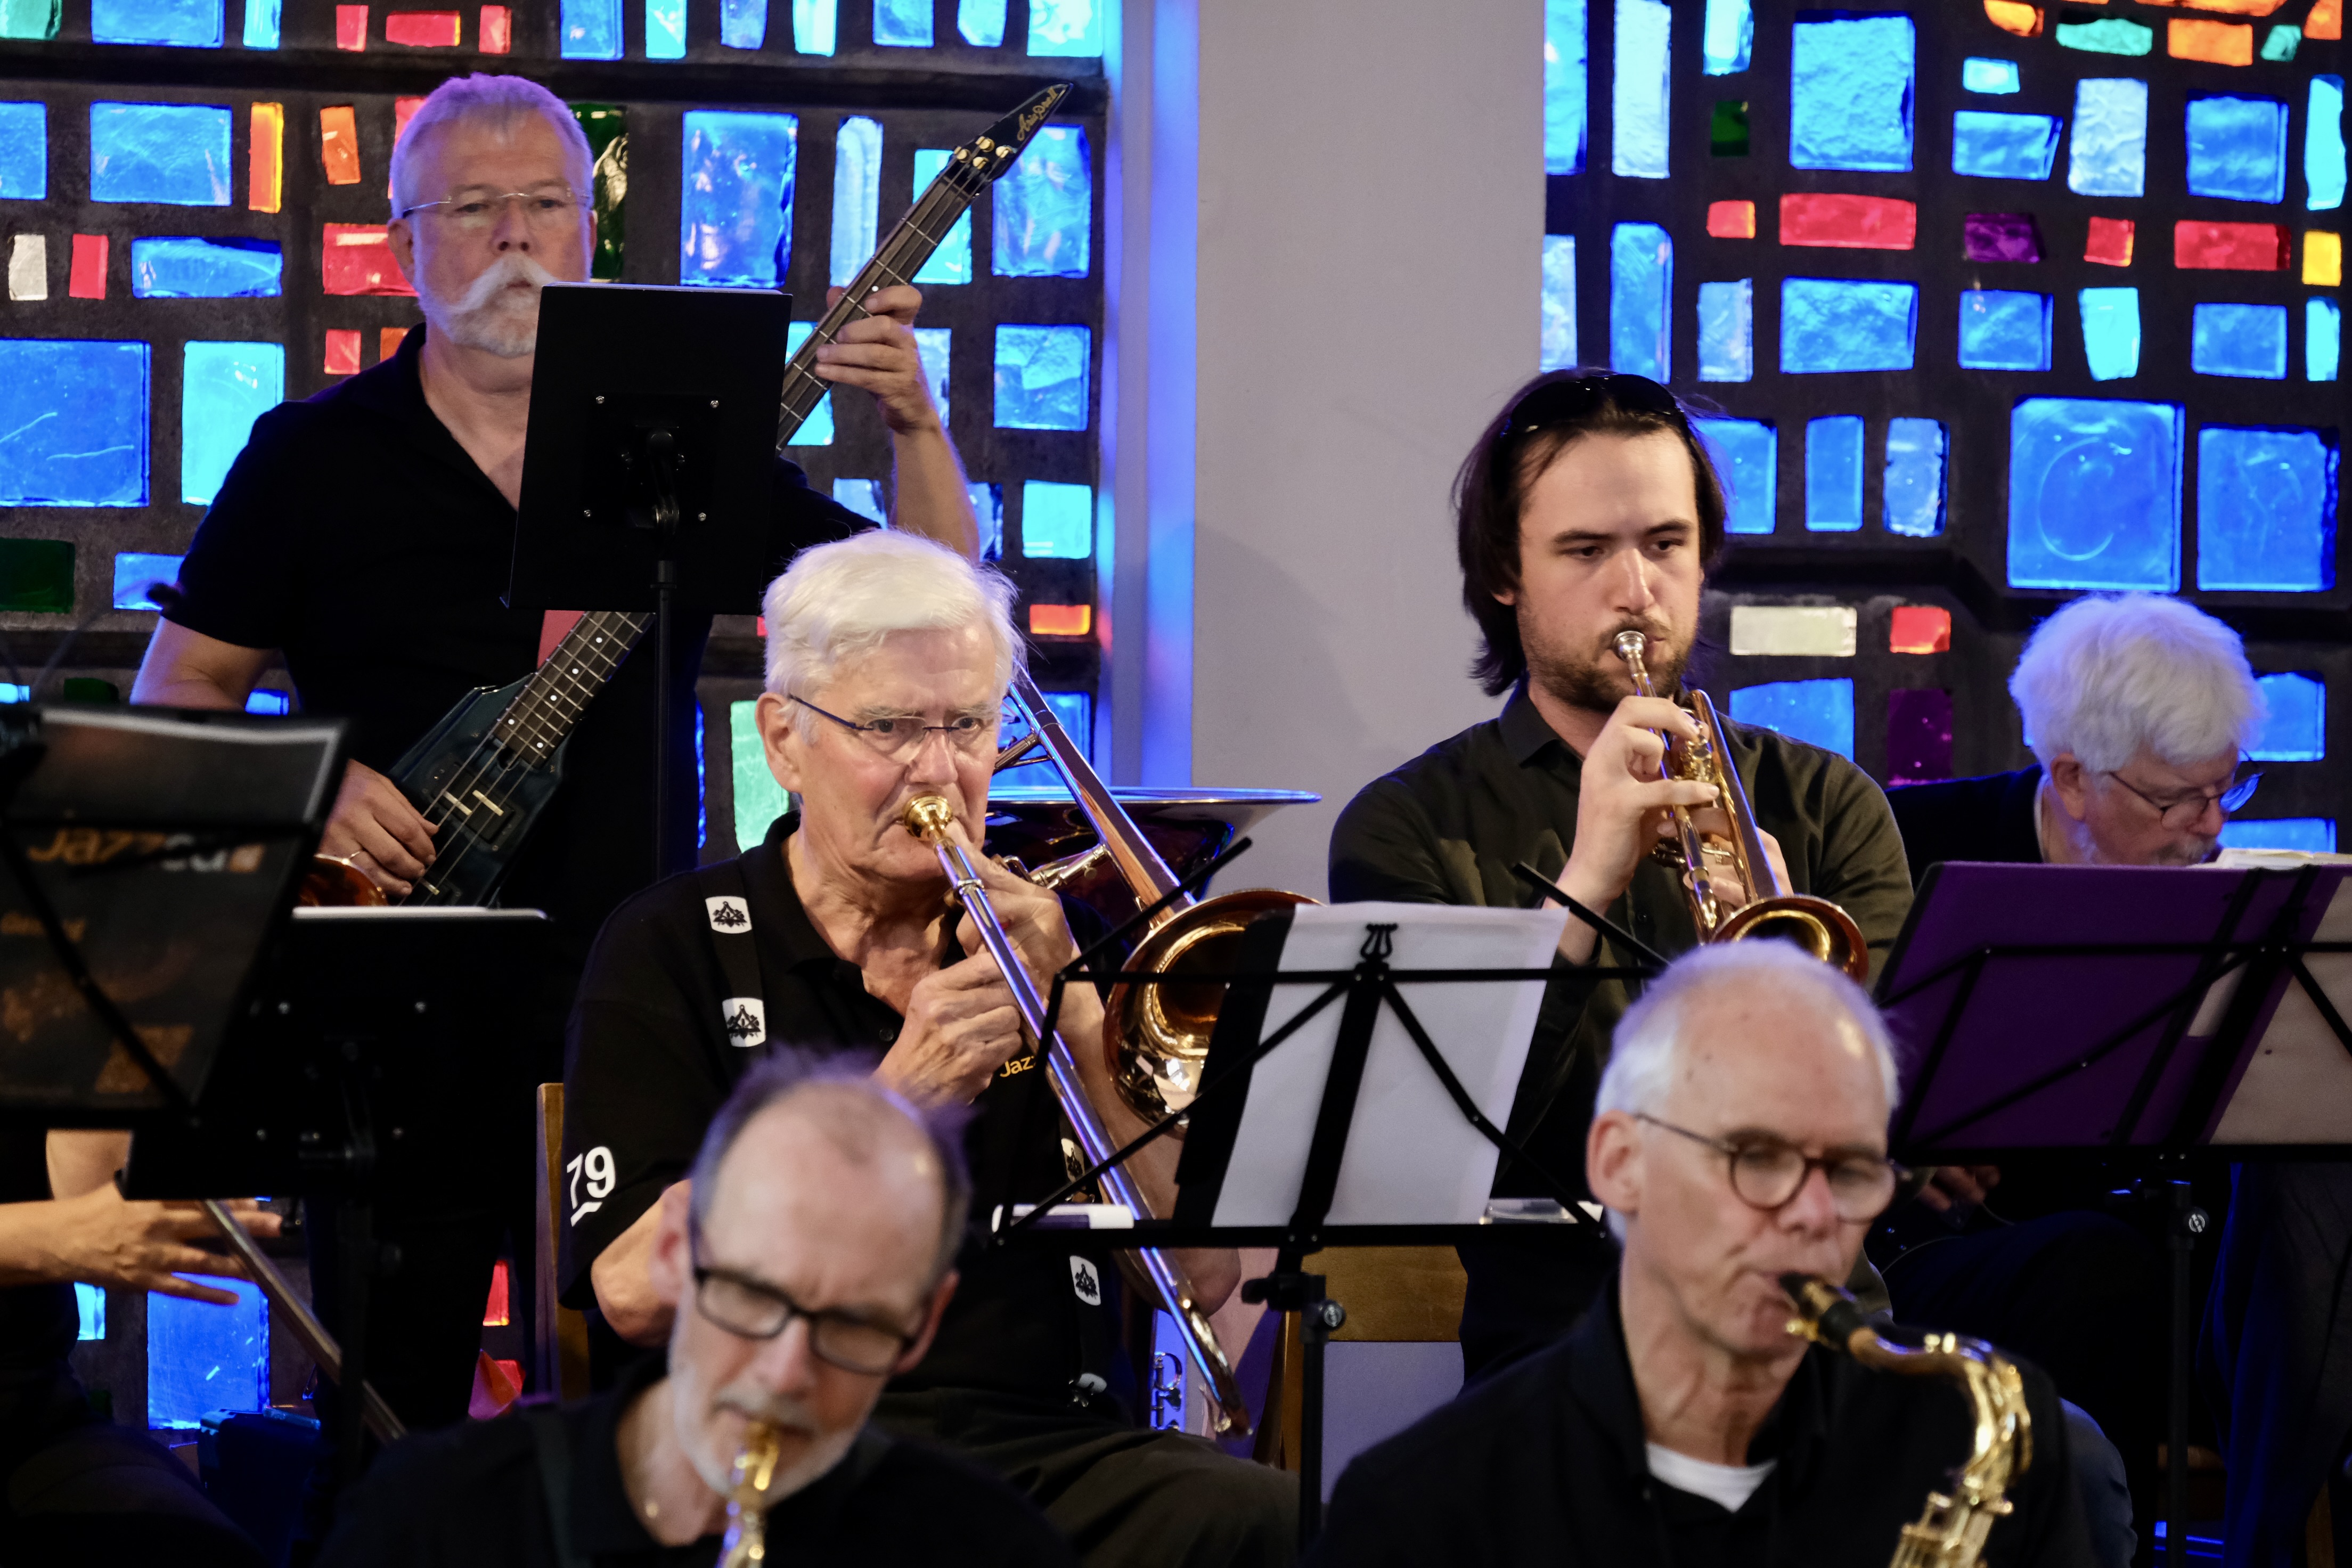 Jazzed Up in der Norwegischen Kirche // Foto: Paul Dietrich und Rainer Müller